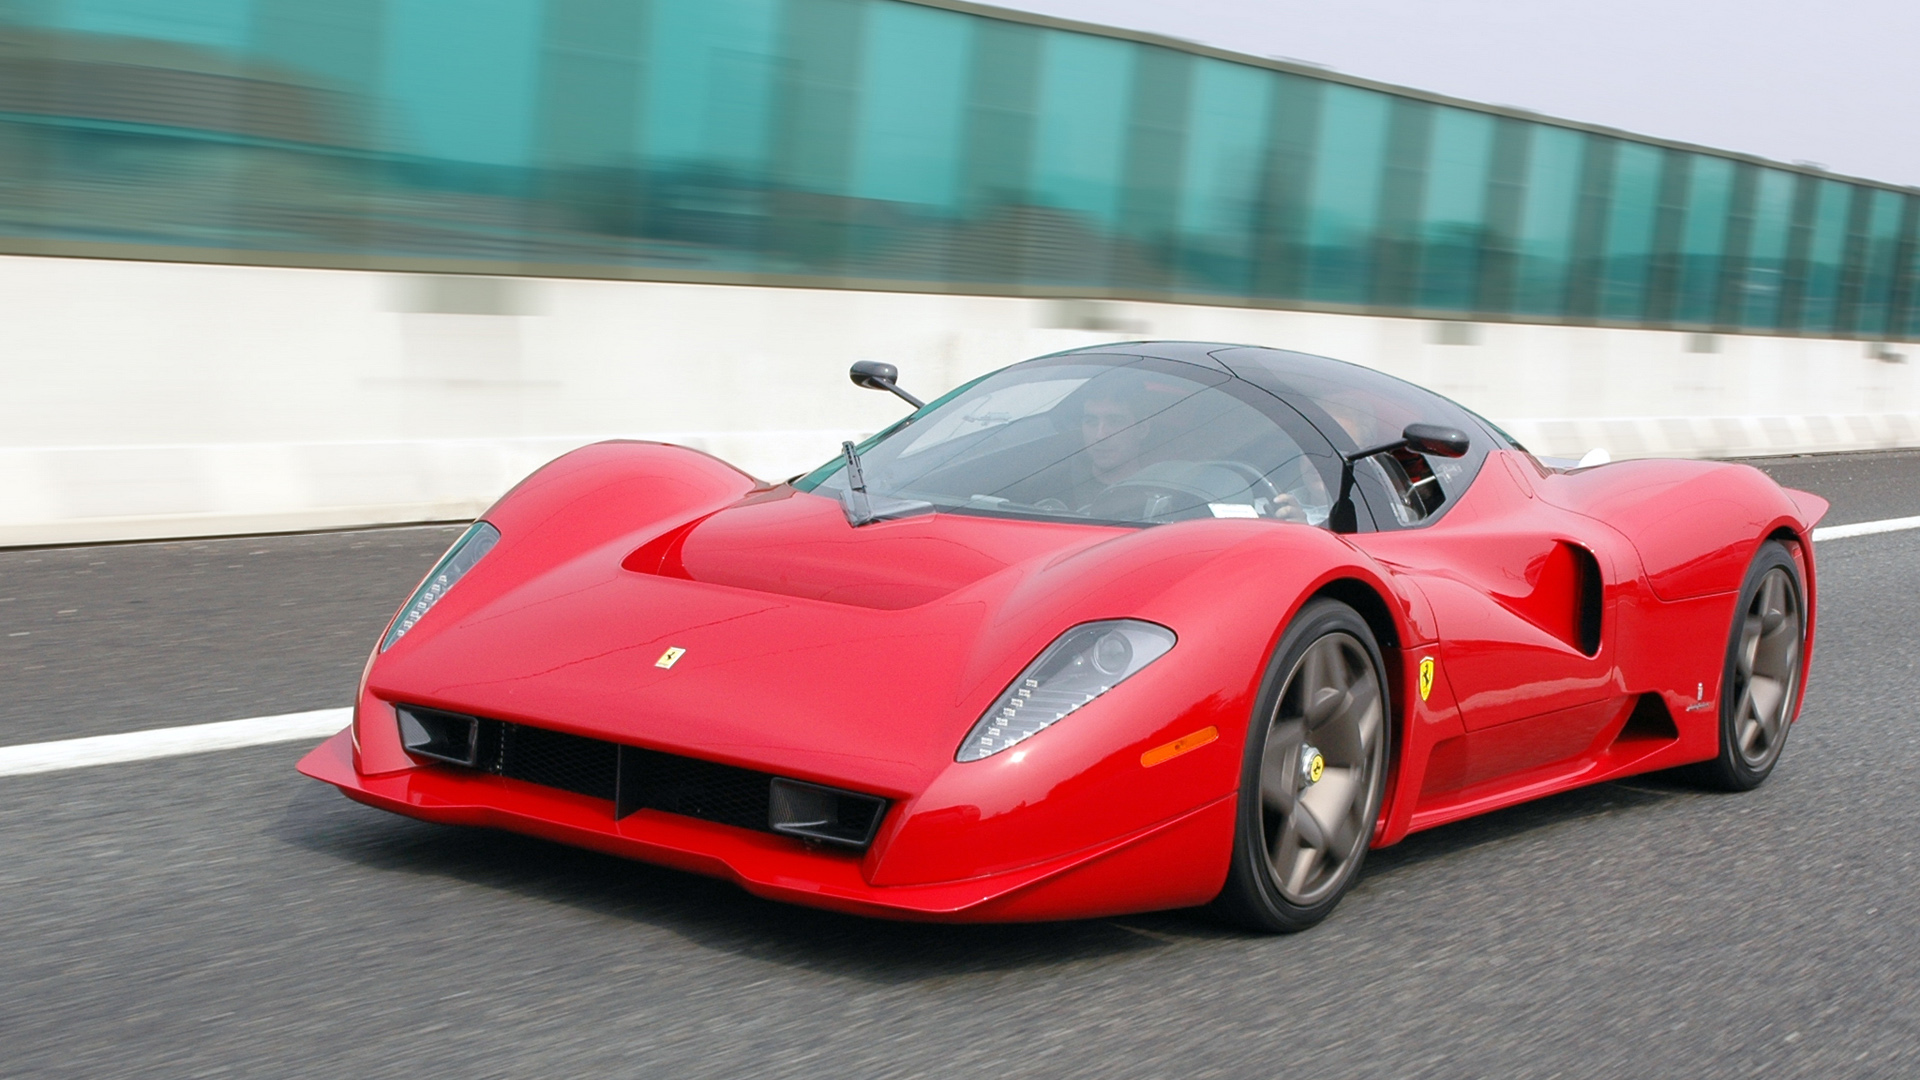 Ferrari Pininfarina P4 5 Concept Pics, Vehicles Collection